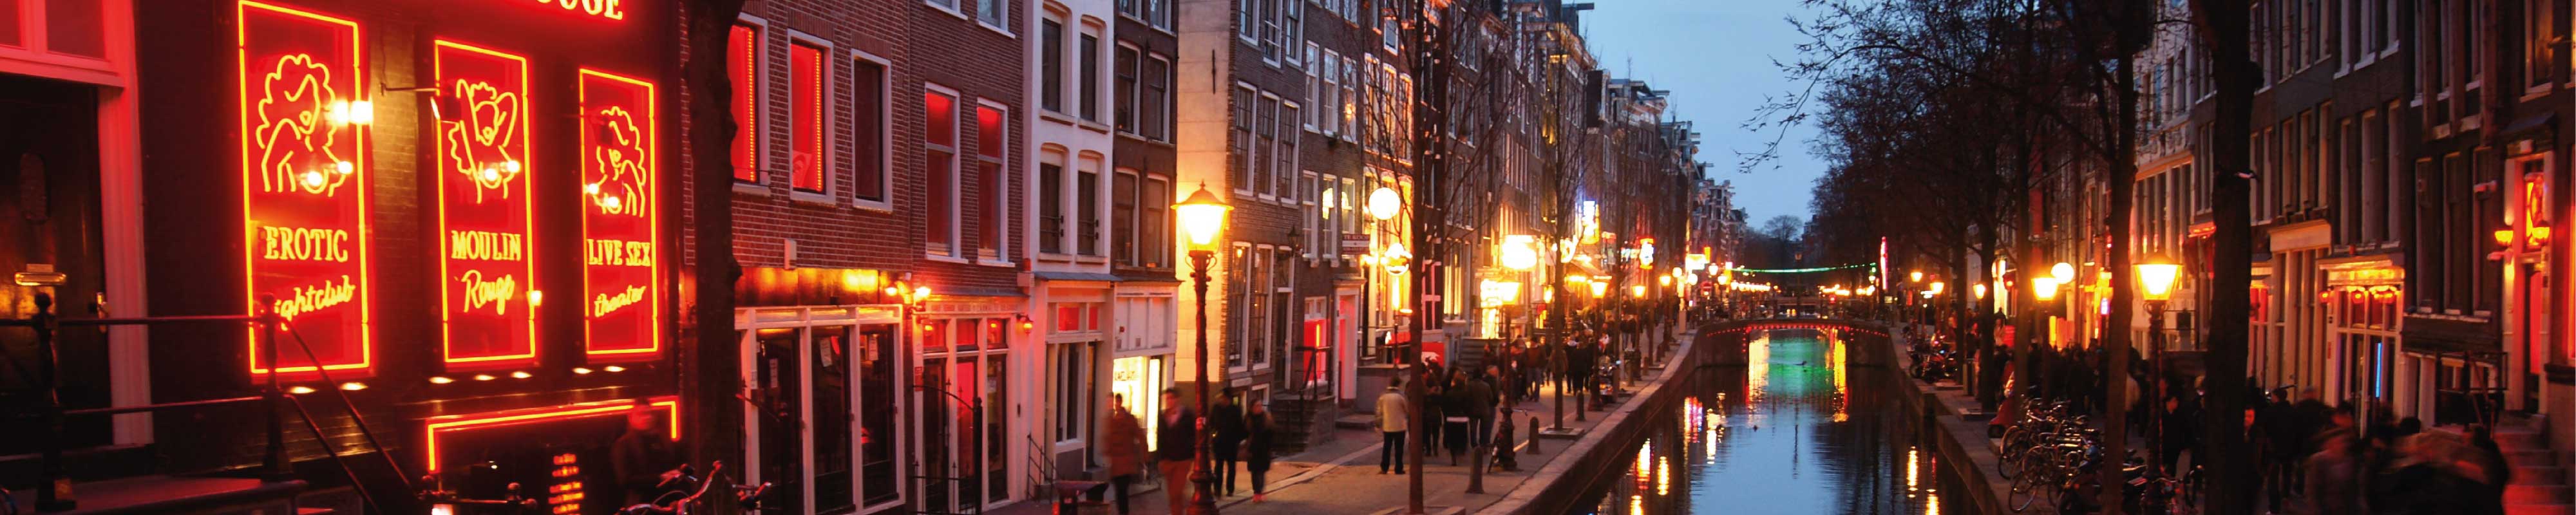 Gepäckaufbewahrung | Rotlichtviertel in Amsterdam - Nannybag